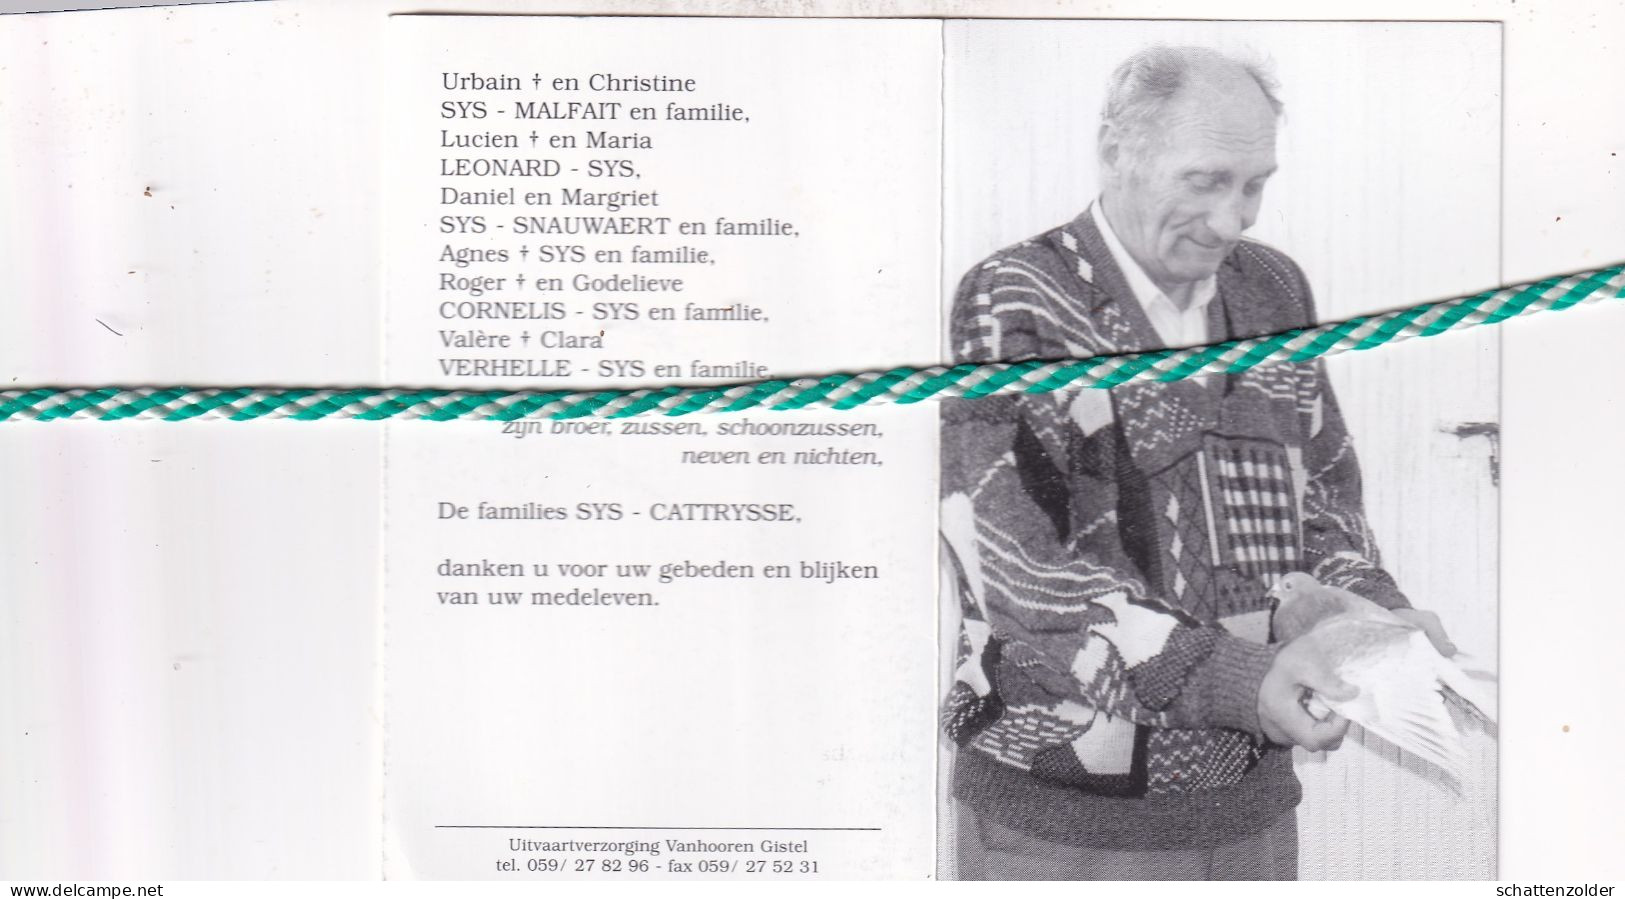 Oswald Sys, Moere 1930, Gistel 2008. Foto Duif - Décès